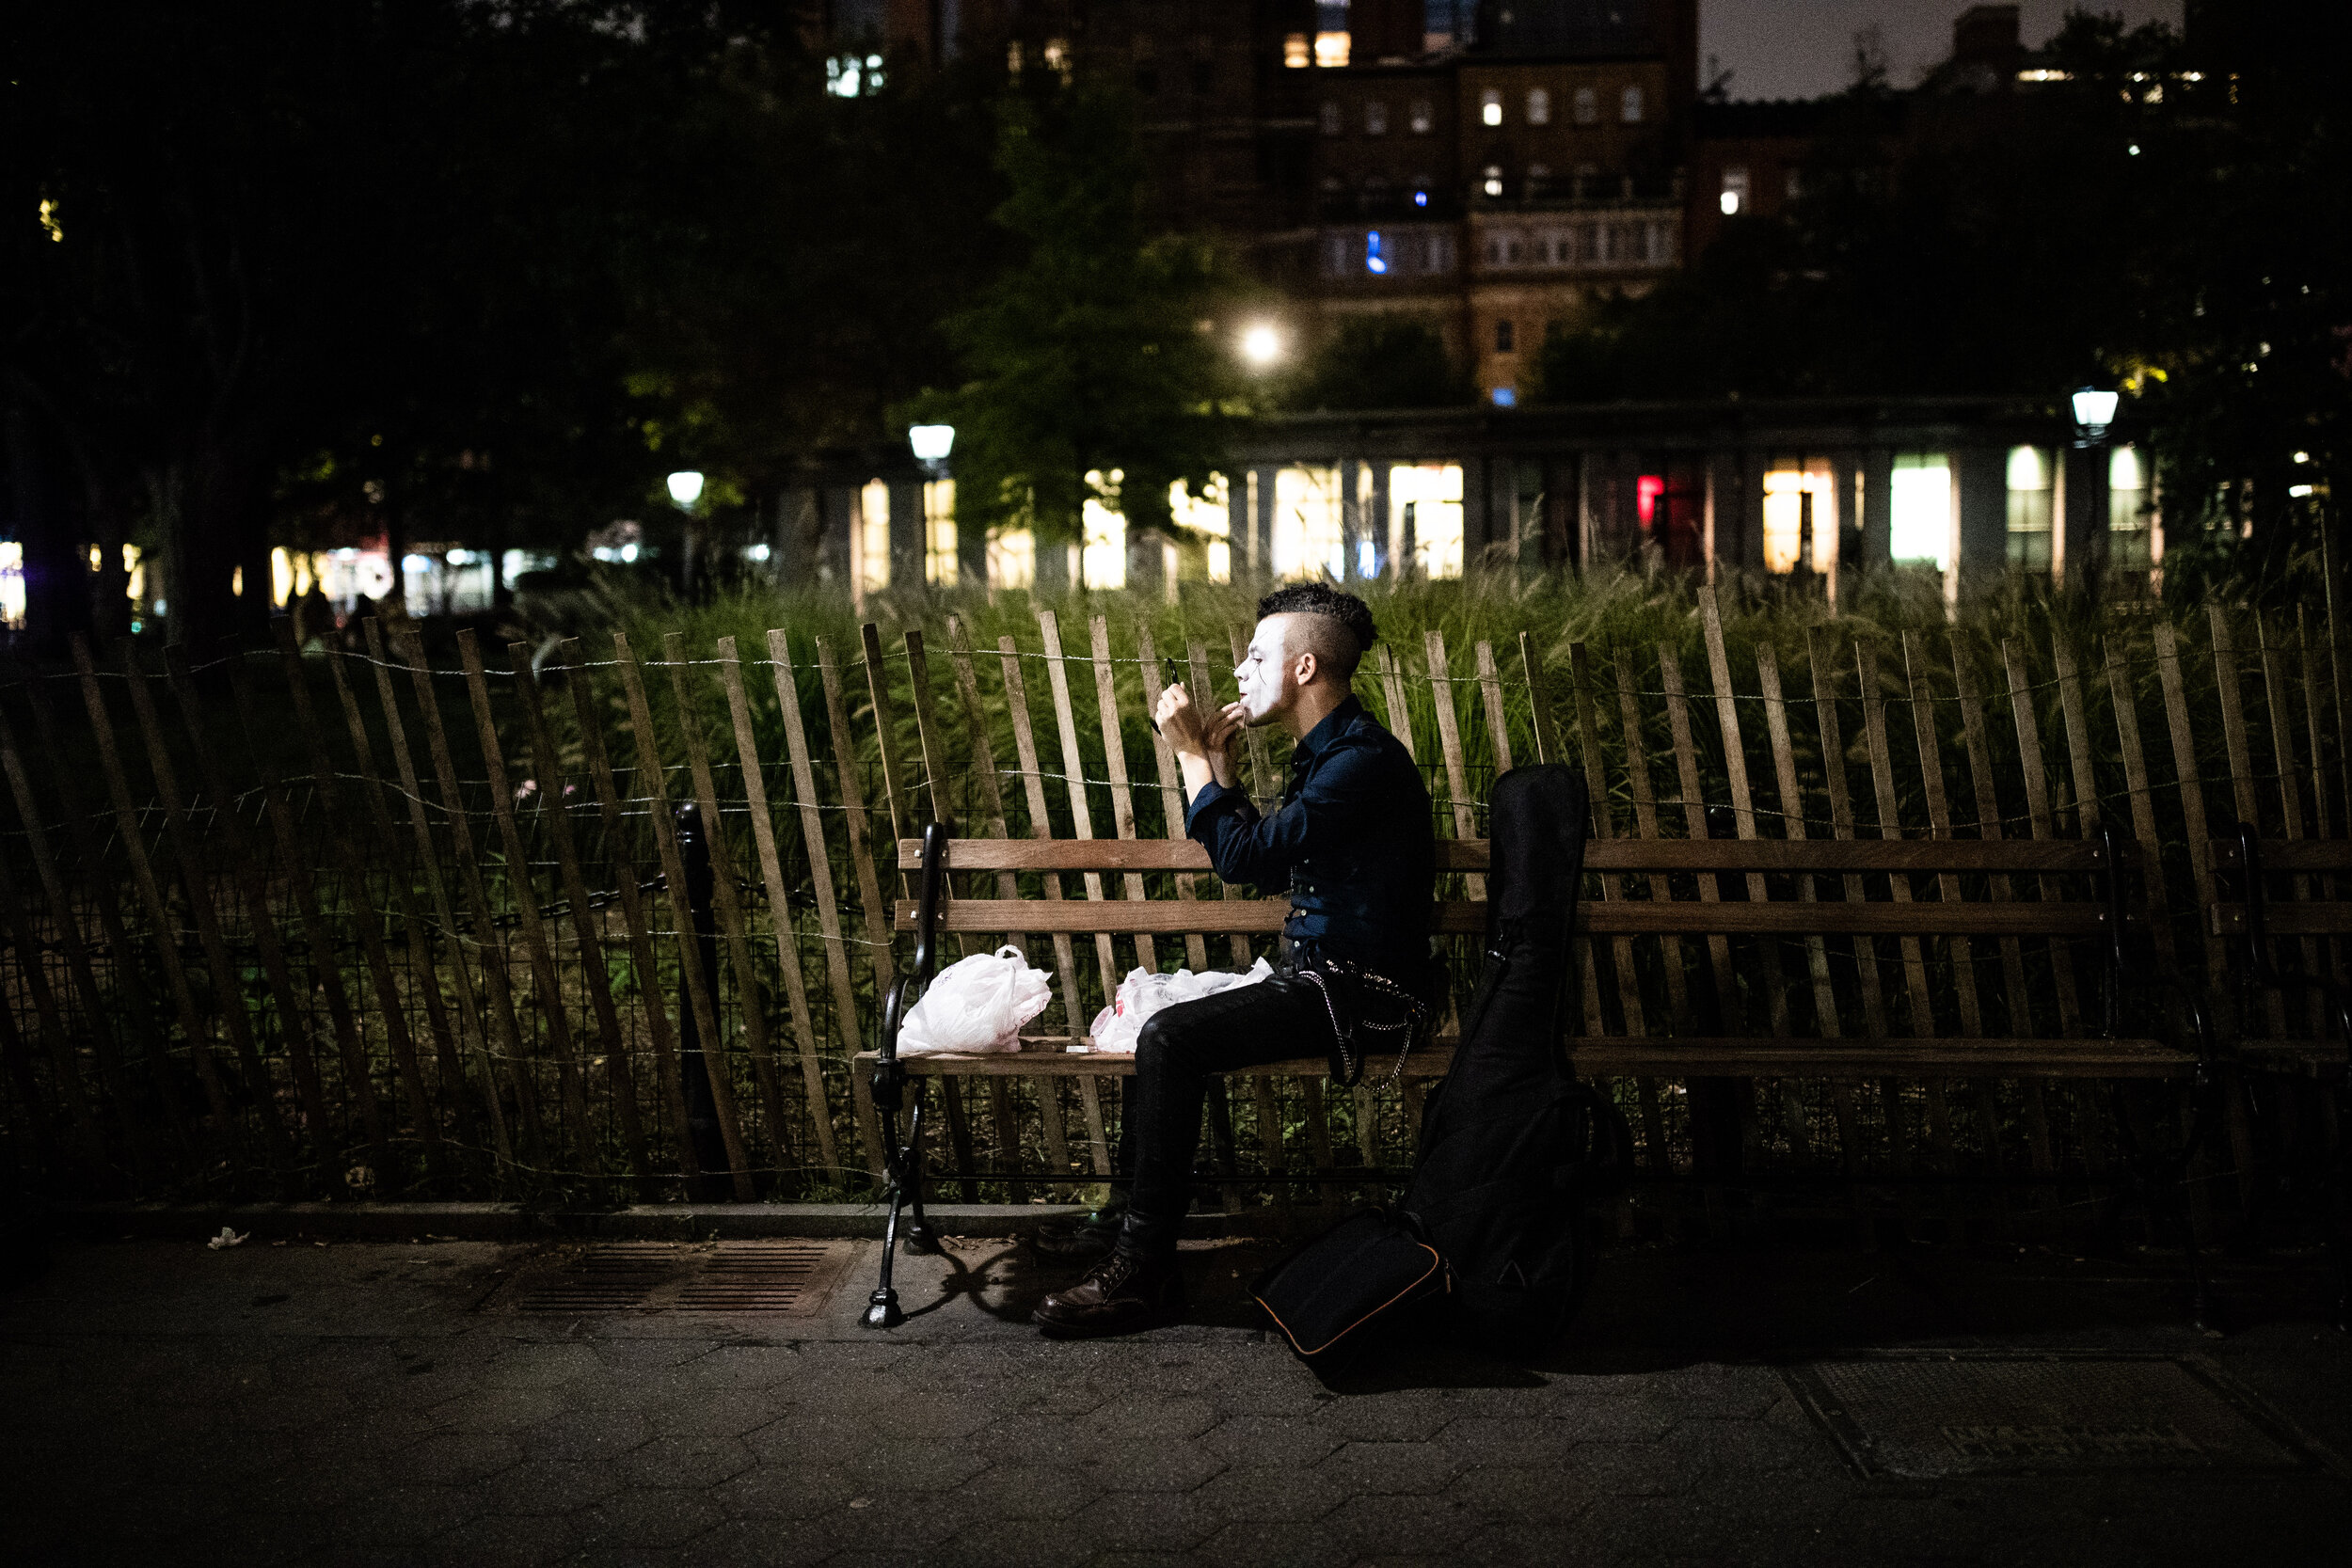 New York street musicians